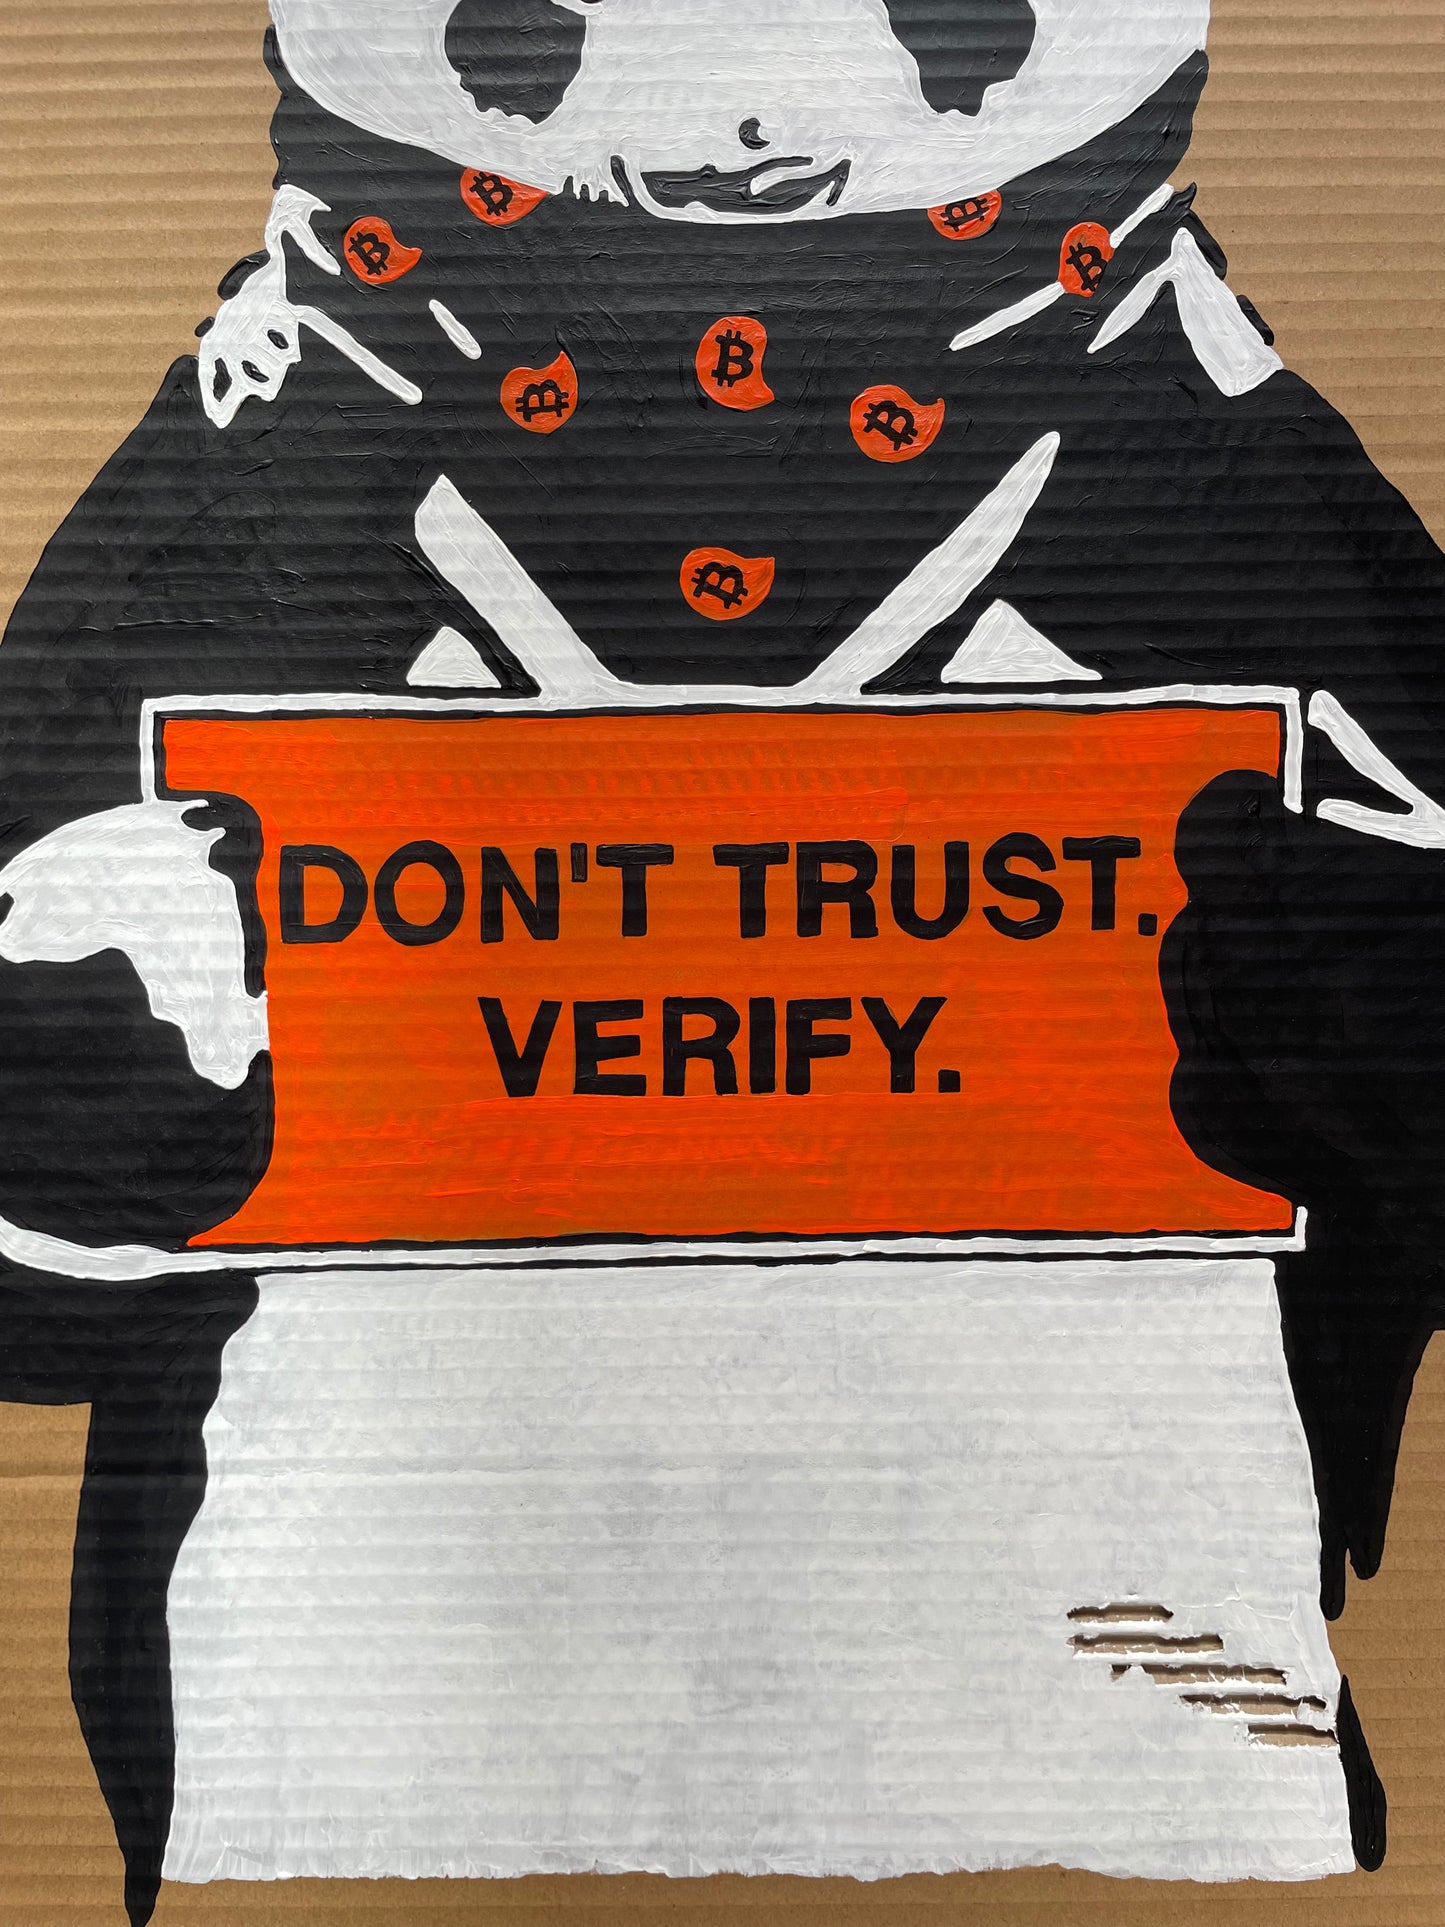 Acrylic Paint on Cardboard "Don't trust. Verify."